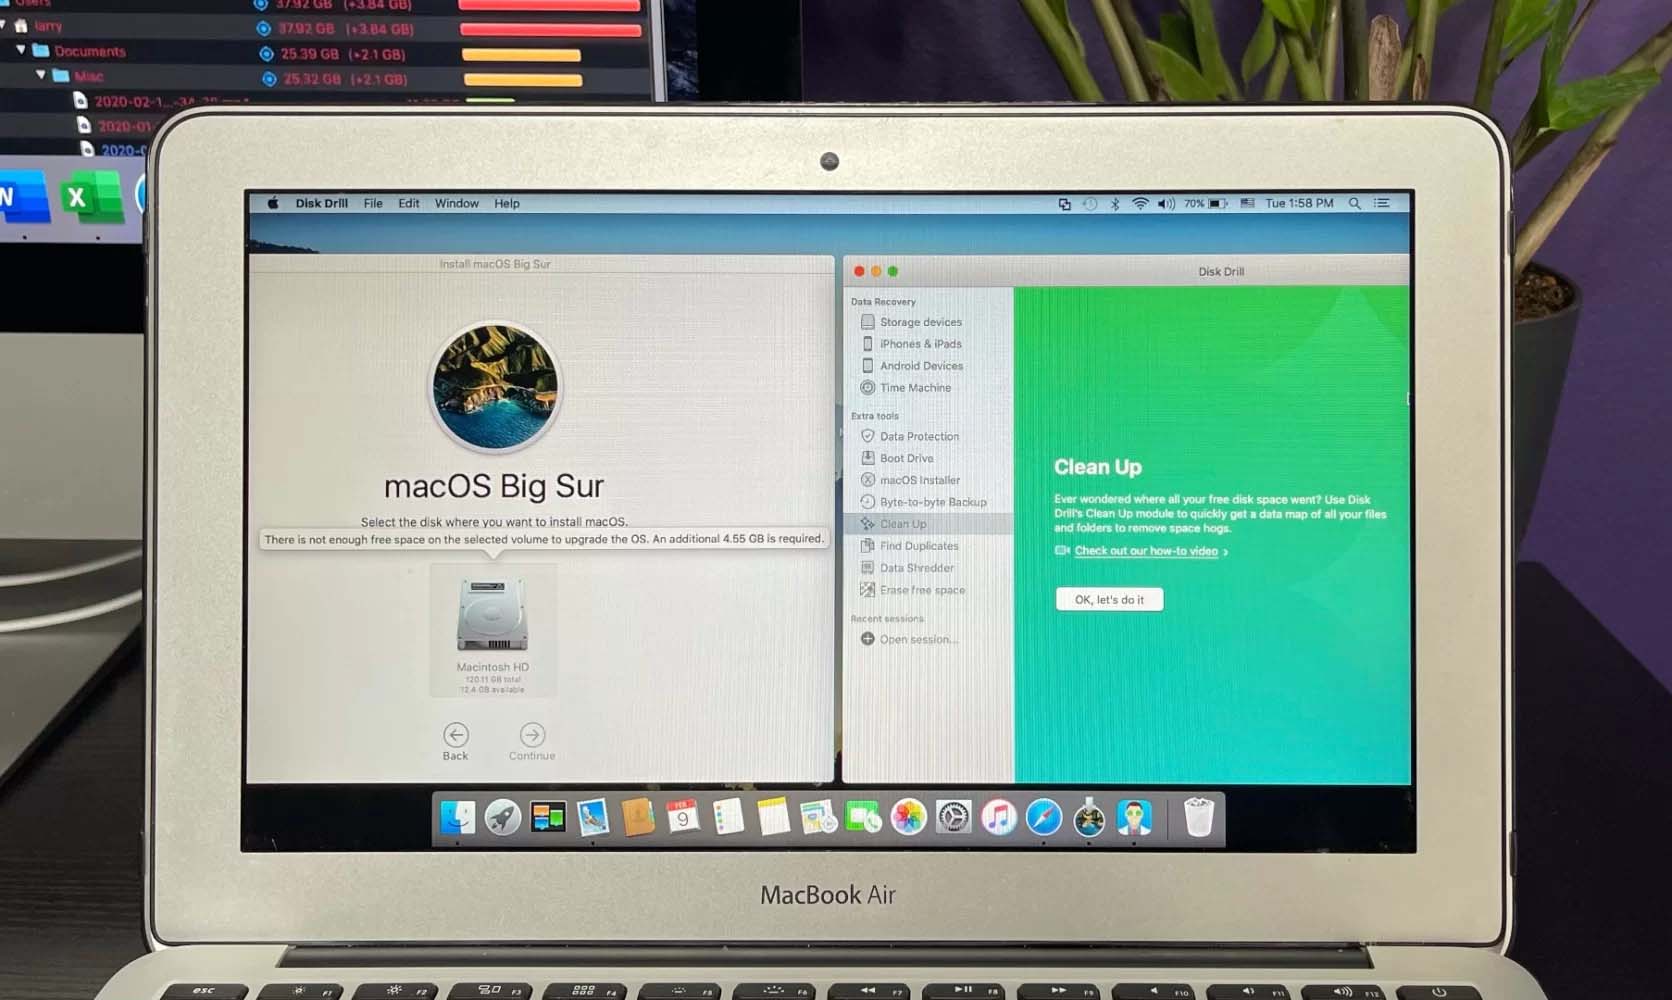 macOS Big Sur update free space